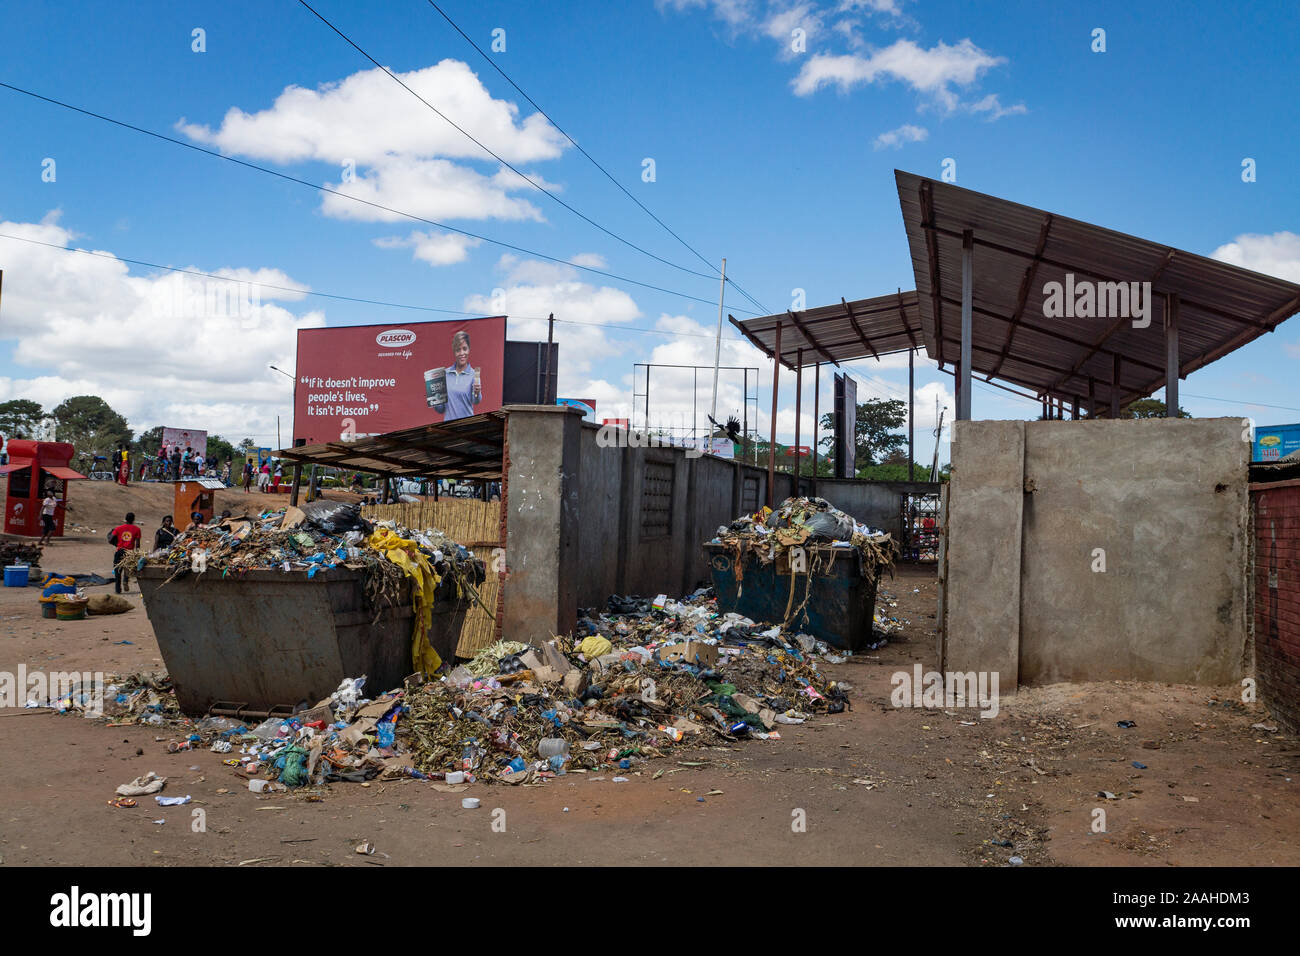 Point de collecte des ordures dans le marché de Mzuzu, Malawi Banque D'Images